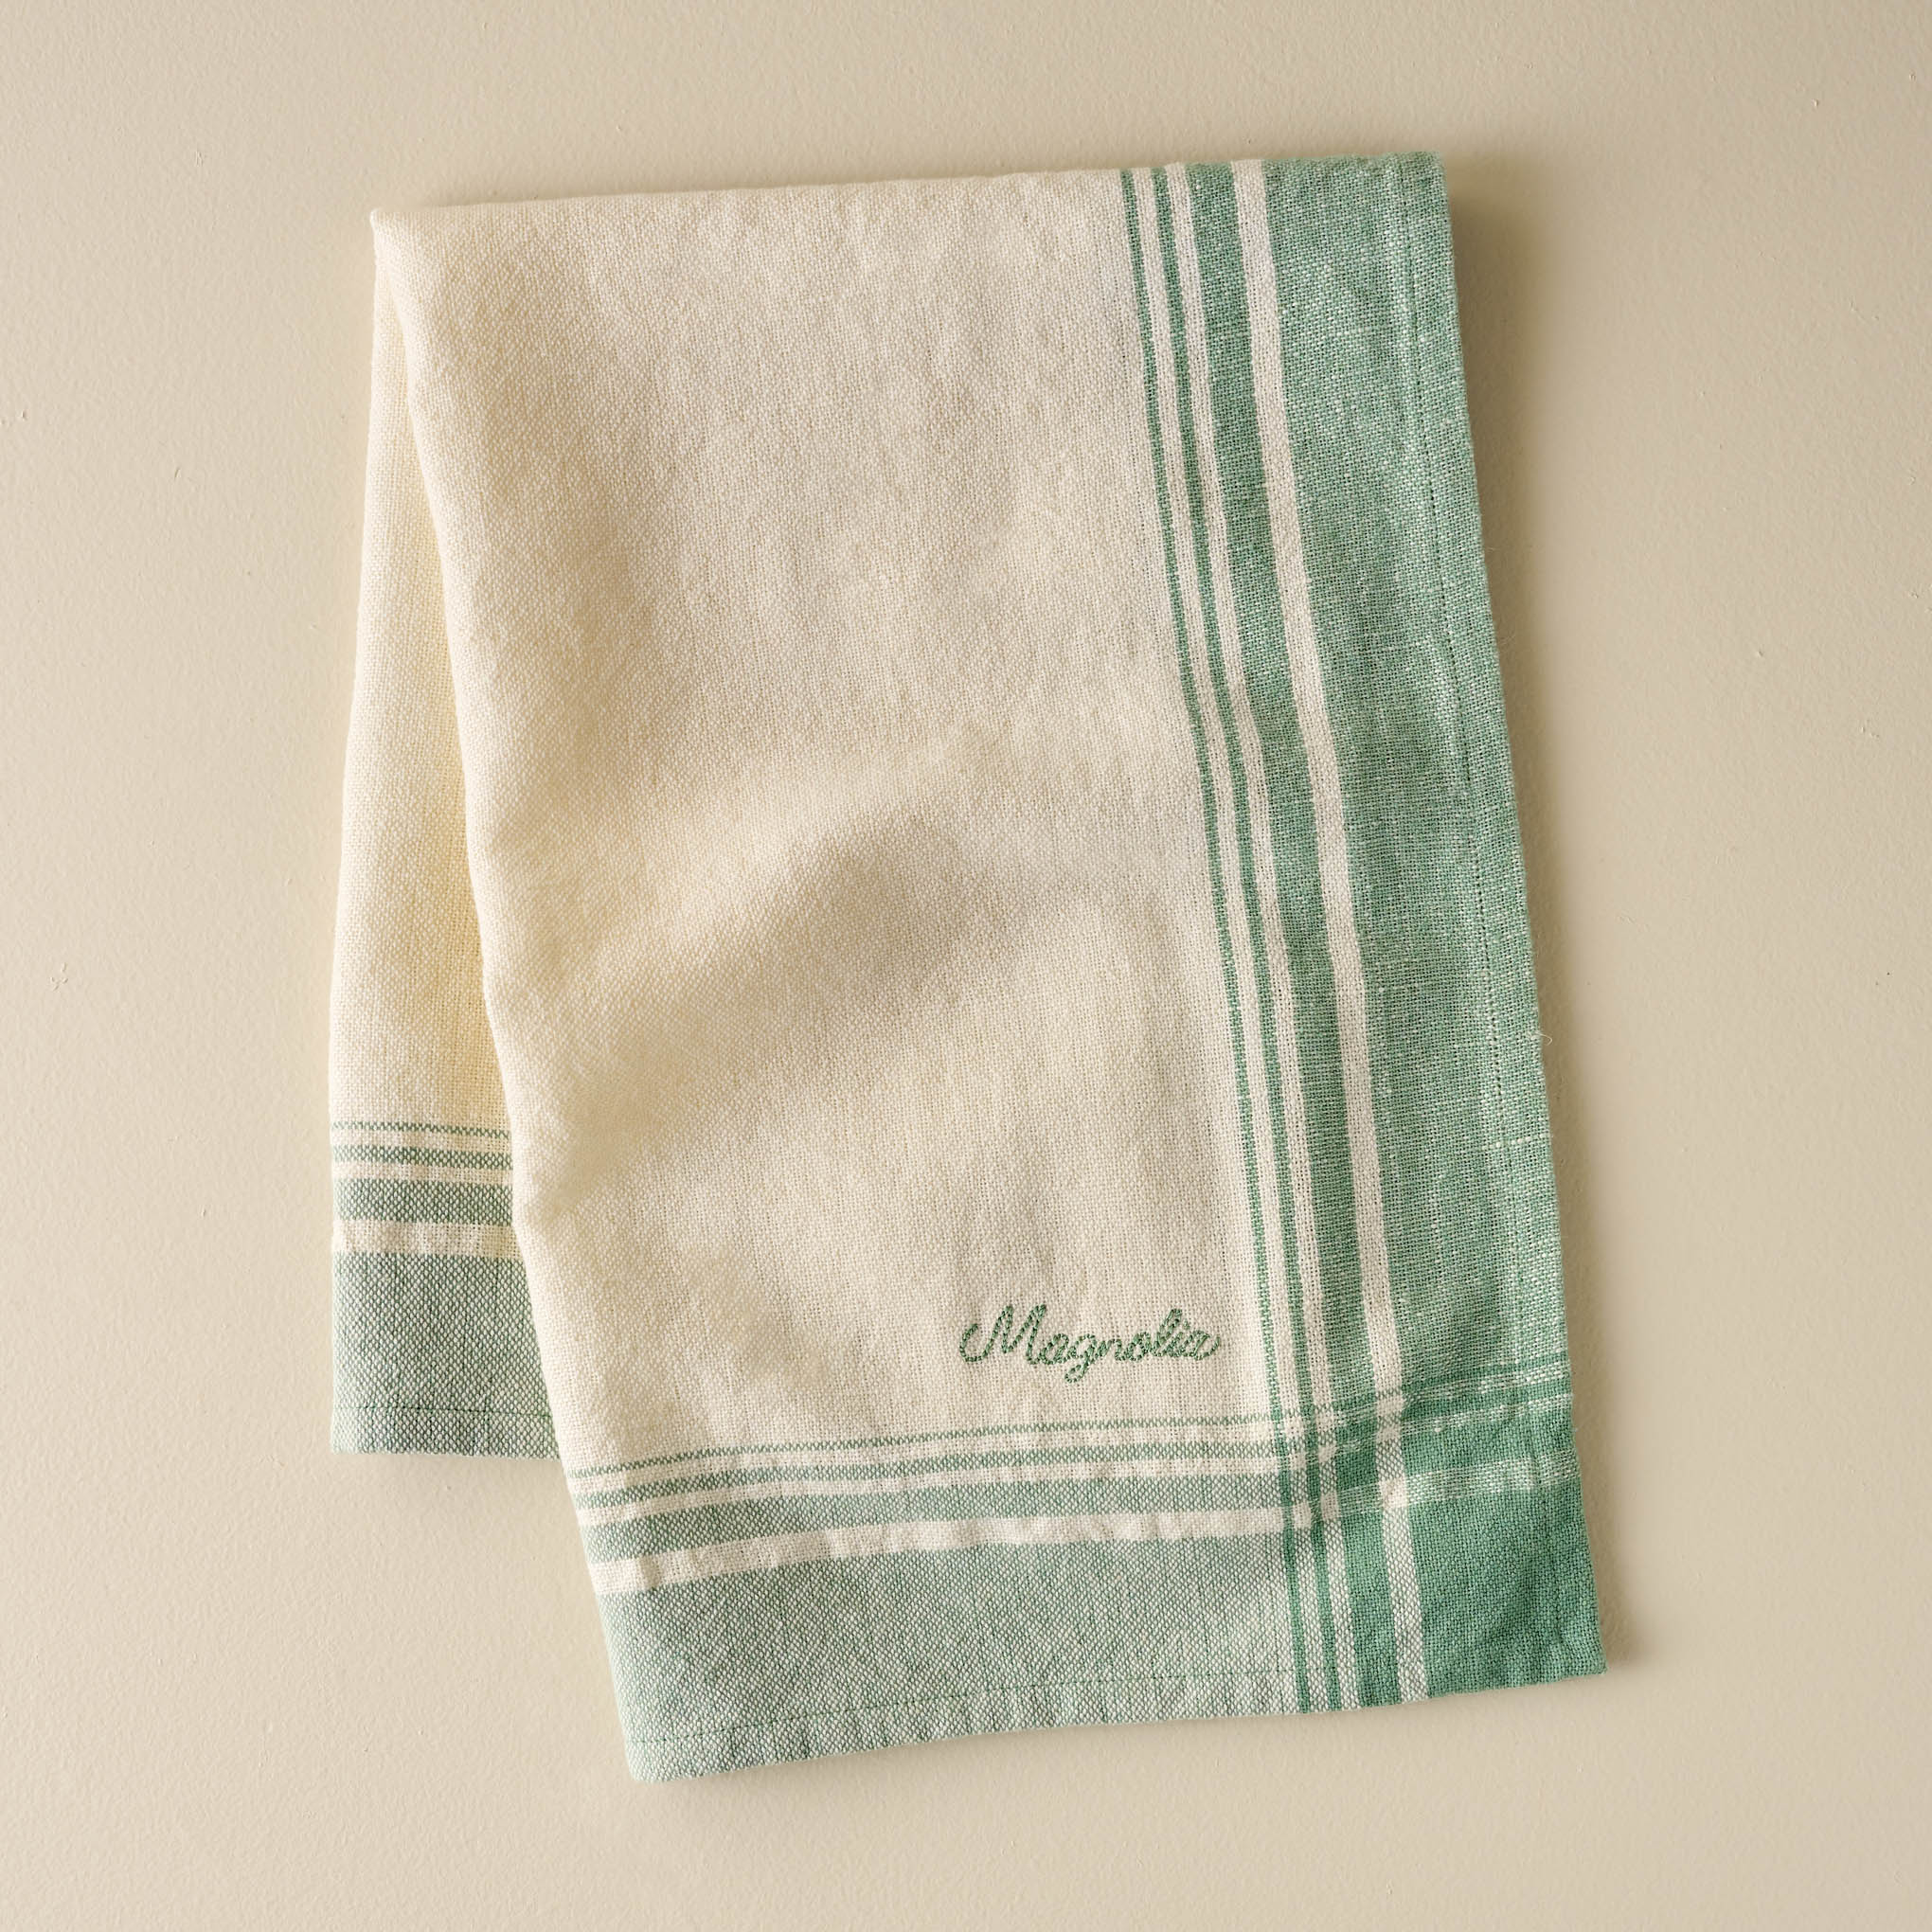 Magnolia Vintage Border Tea Towel $16.00